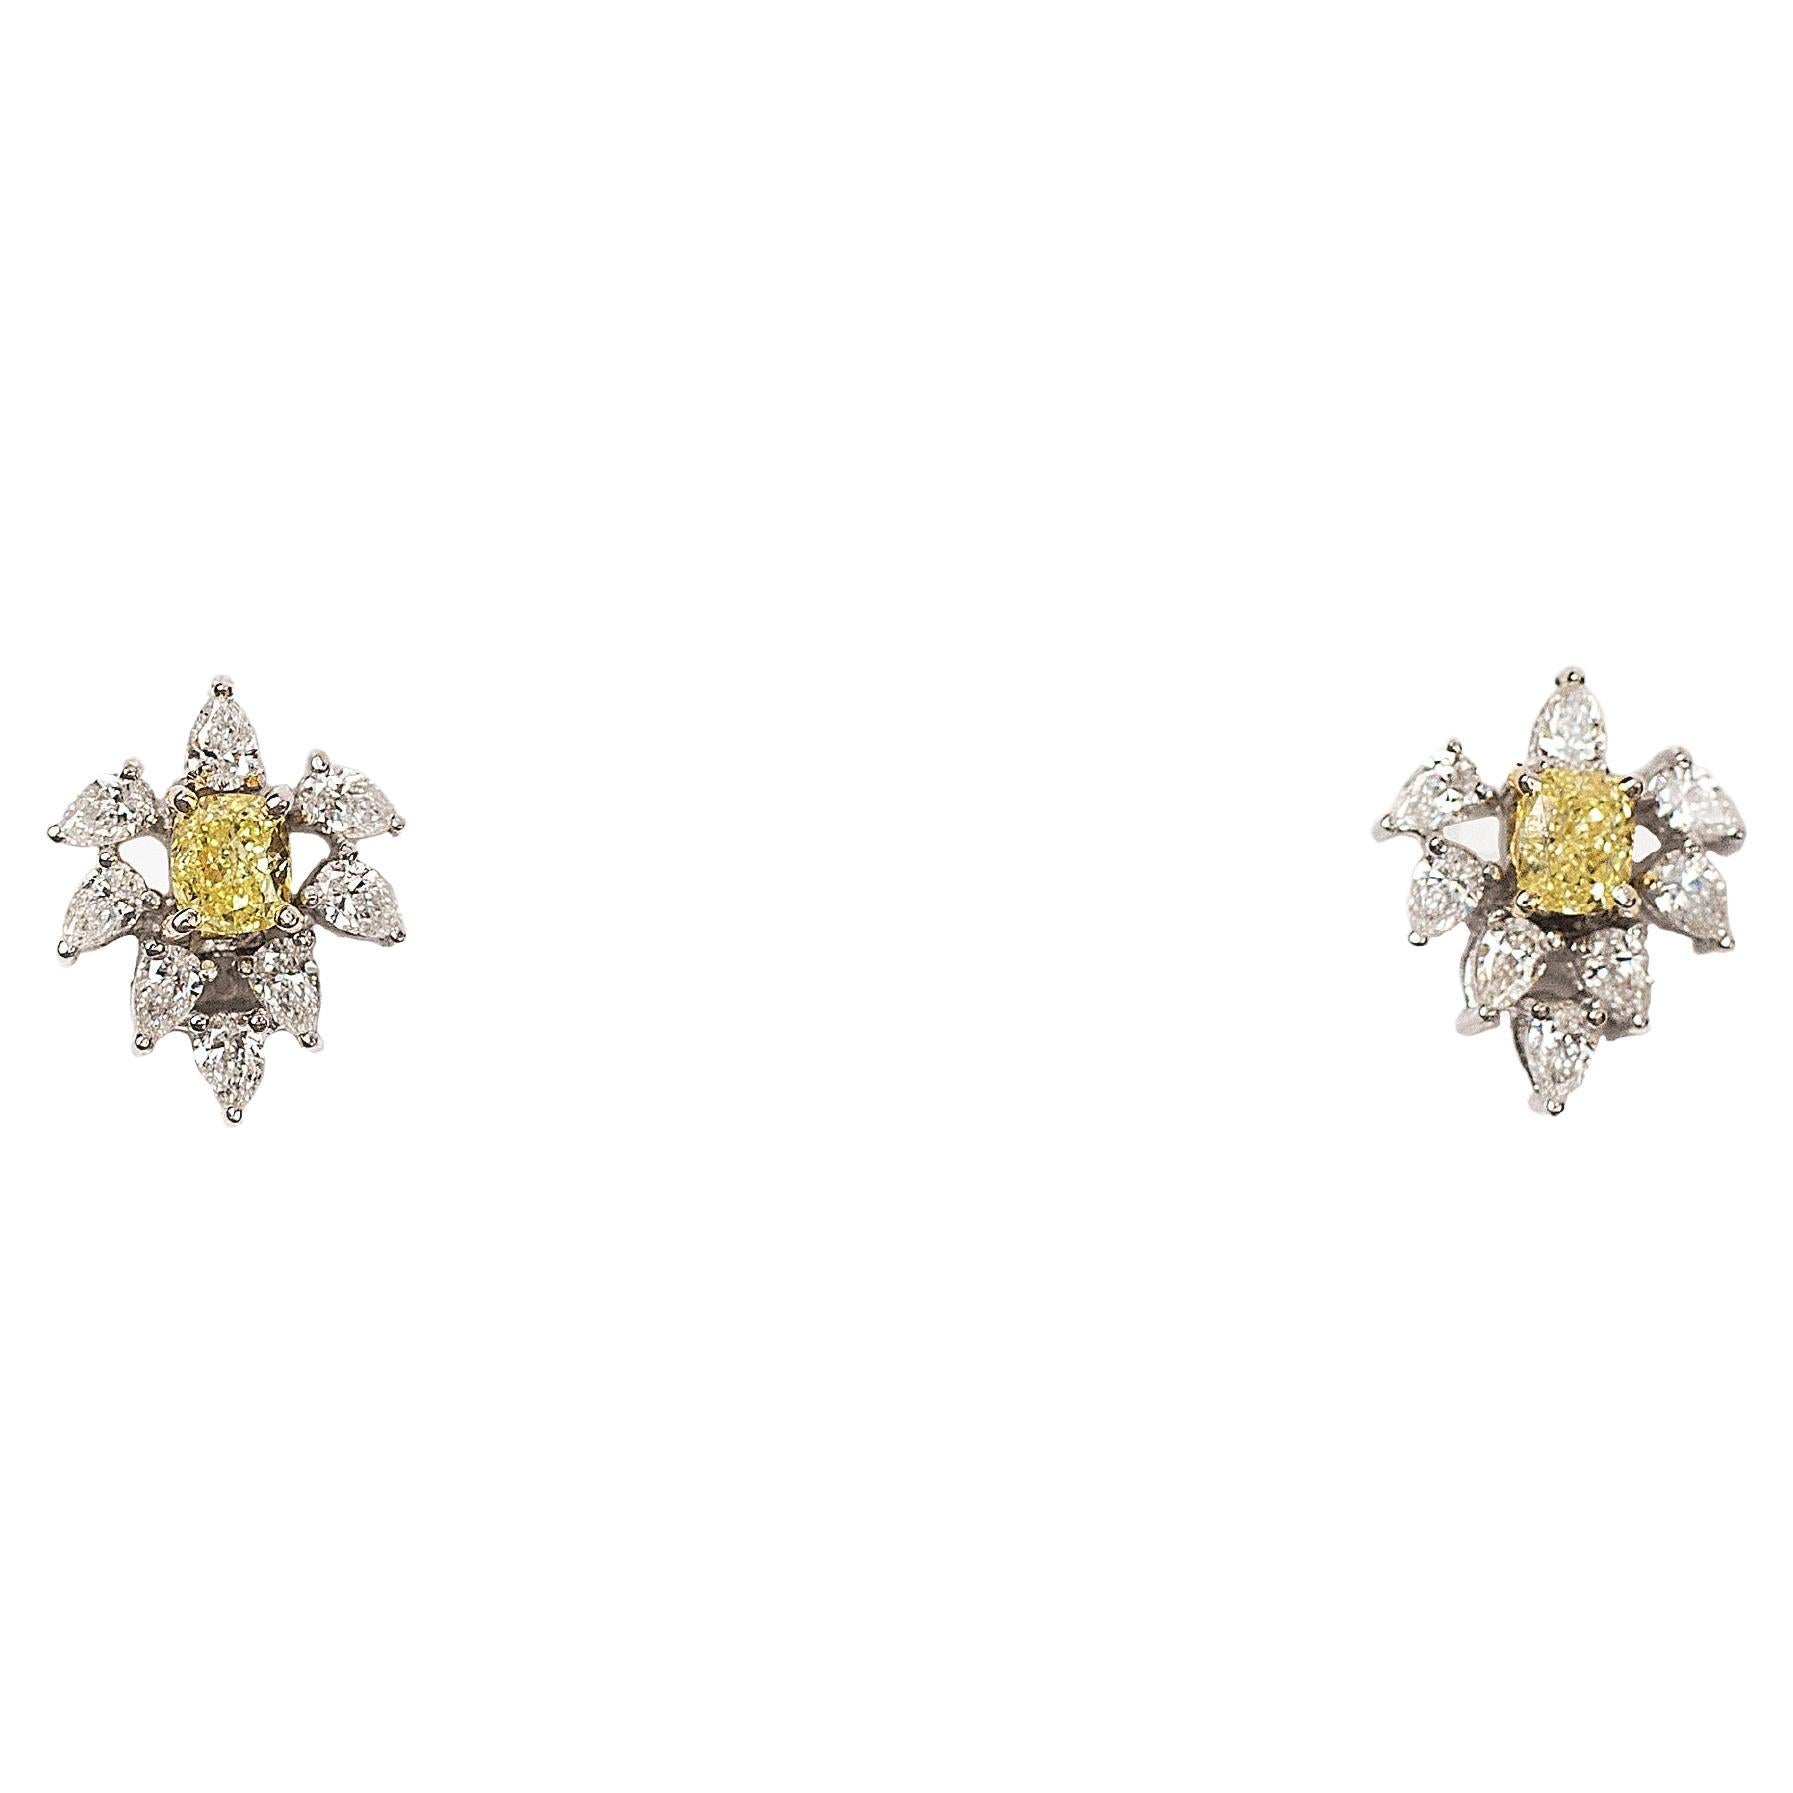 2,36 Karat Ohrringe mit gelben Fancy-Diamanten in 18 Karat Gold